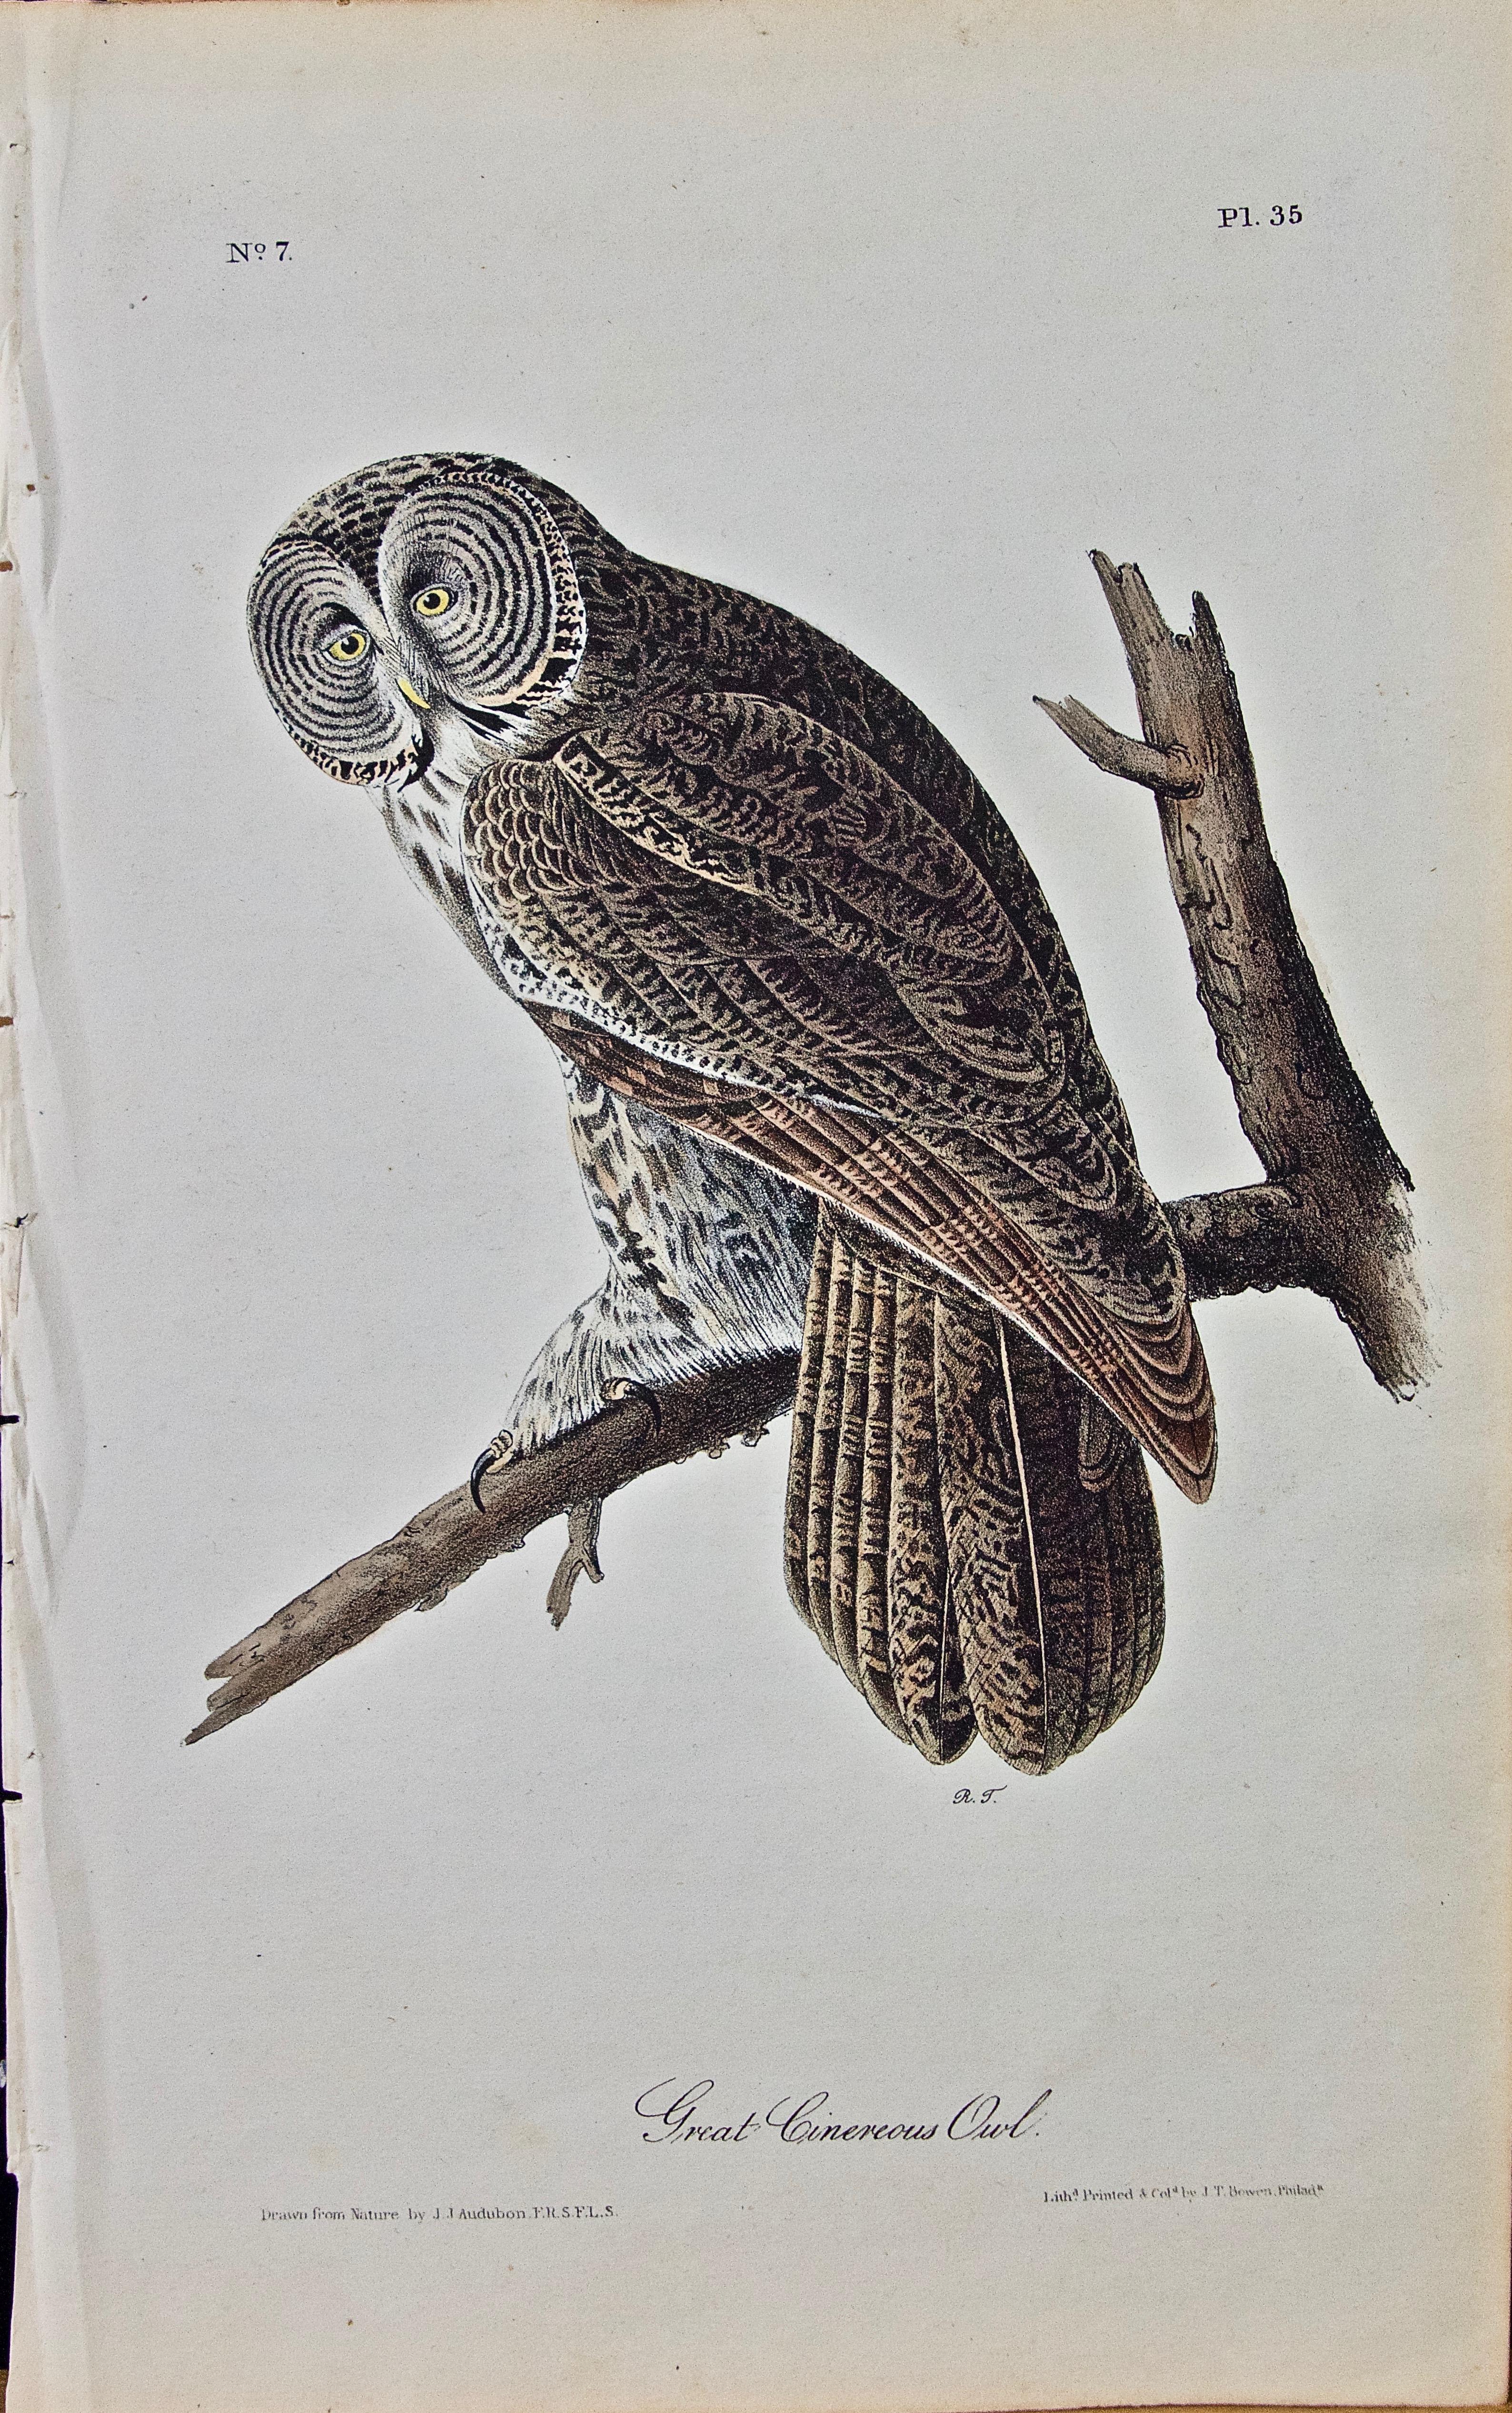 John James Audubon Animal Print - Original Audubon Hand Colored Bird Lithograph of "Great Cinereous Owl" 